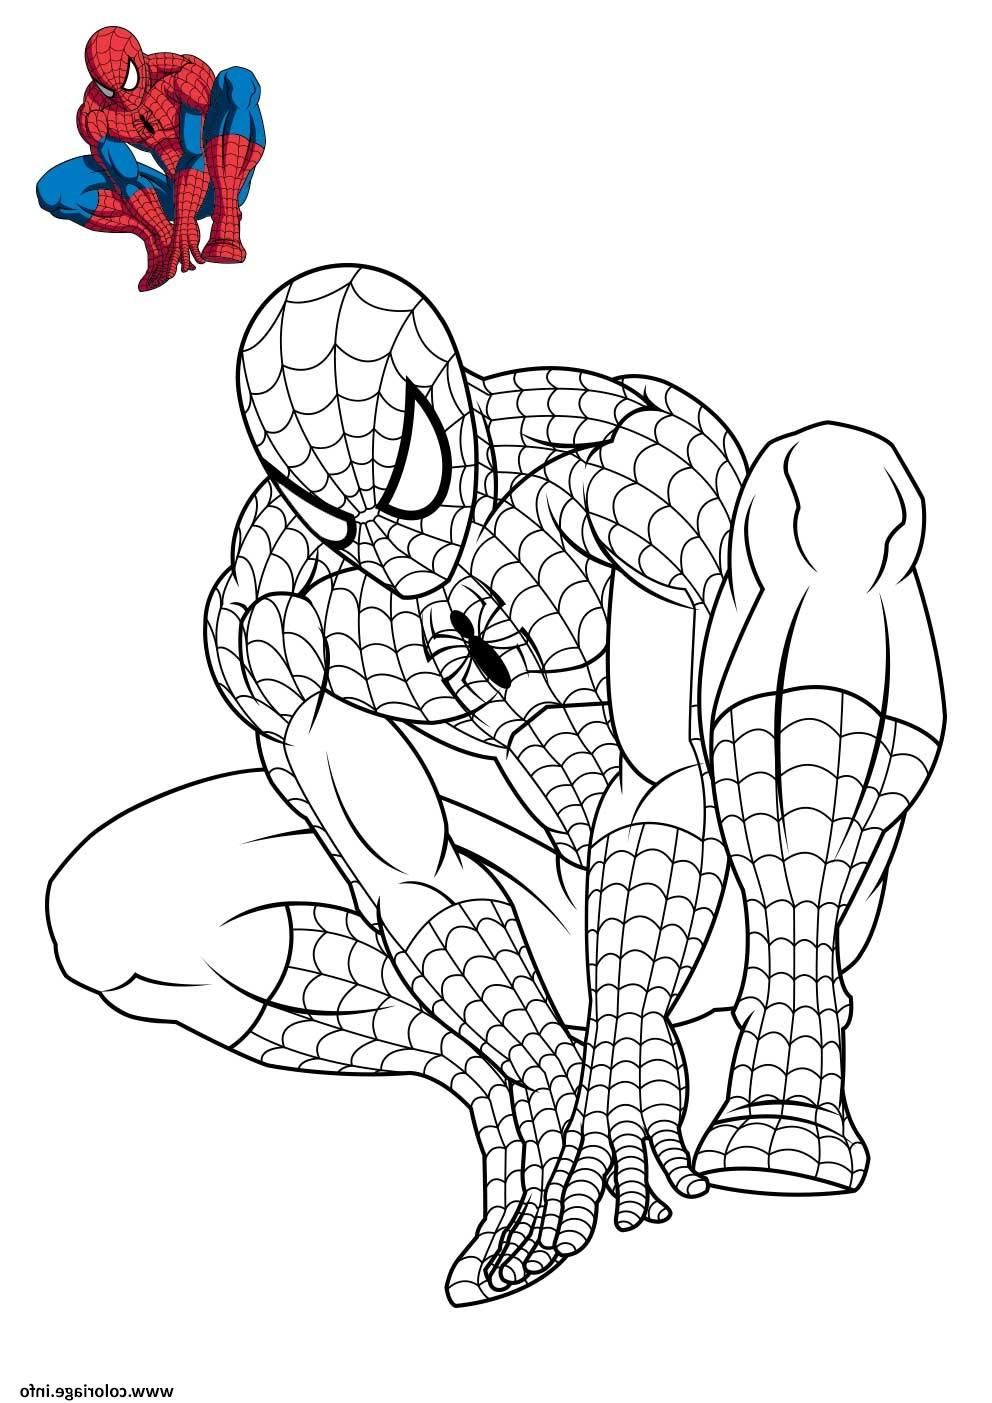 Coloriage à Imprimer Spiderman Luxe Collection Coloriage Spiderman 3 En Reflexion Dessin à Imprimer